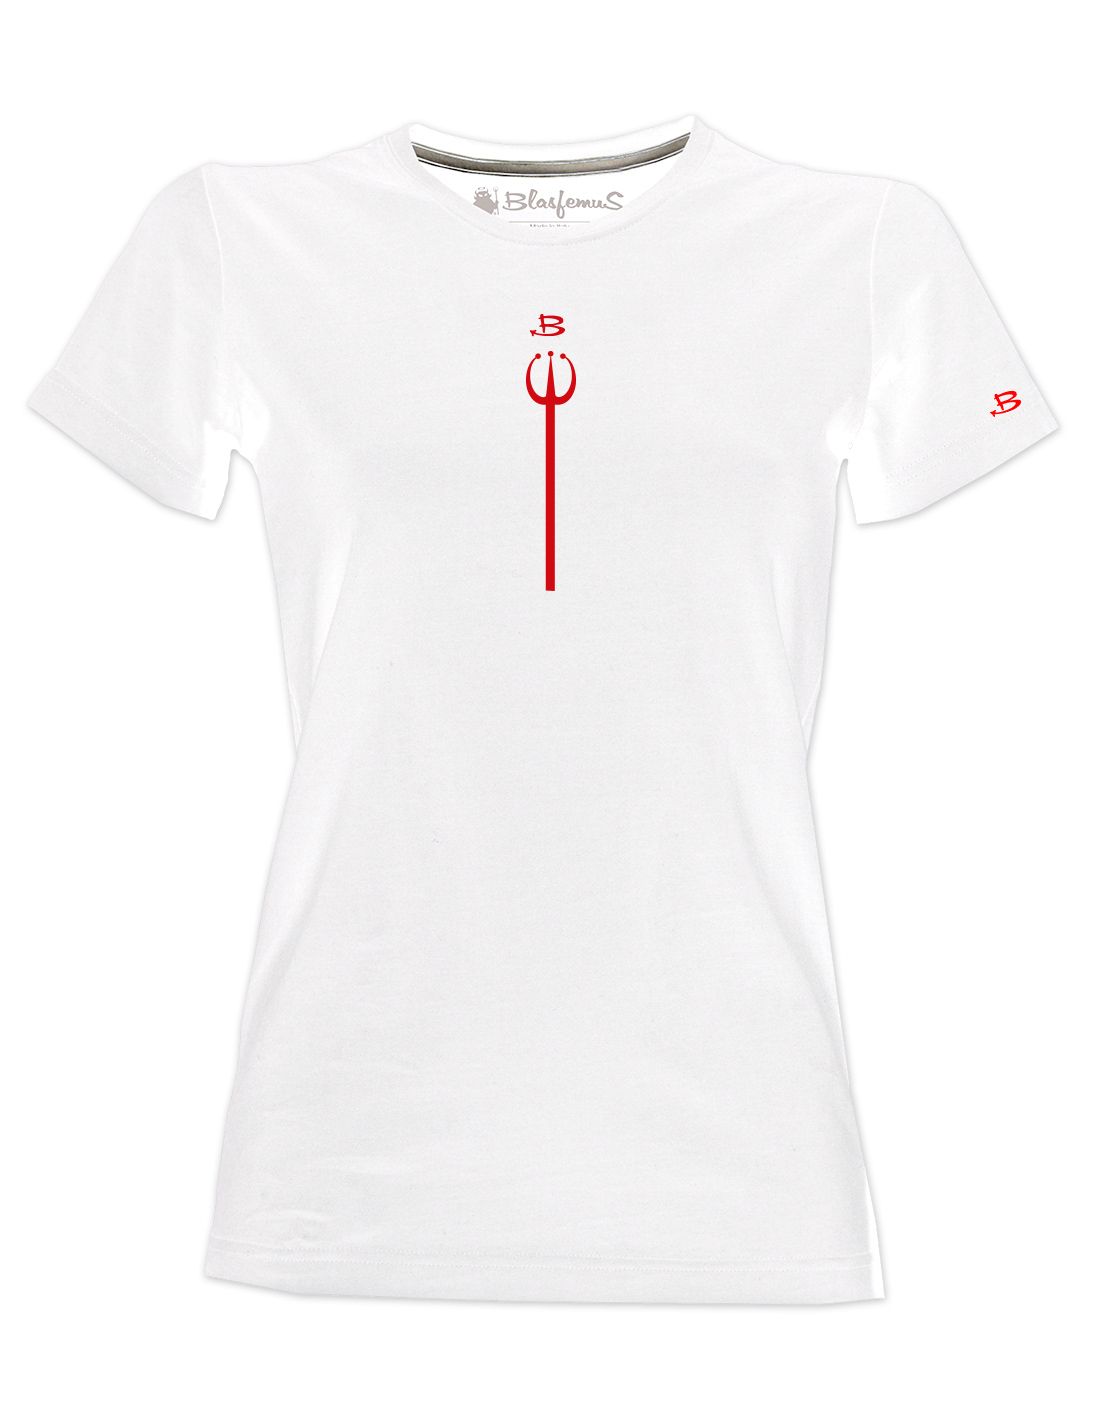 T-shirt Donna - Maglietta con forcone Diavolo Rosso Blasfemus Color White  Fabric type Cotone Jersey Size M